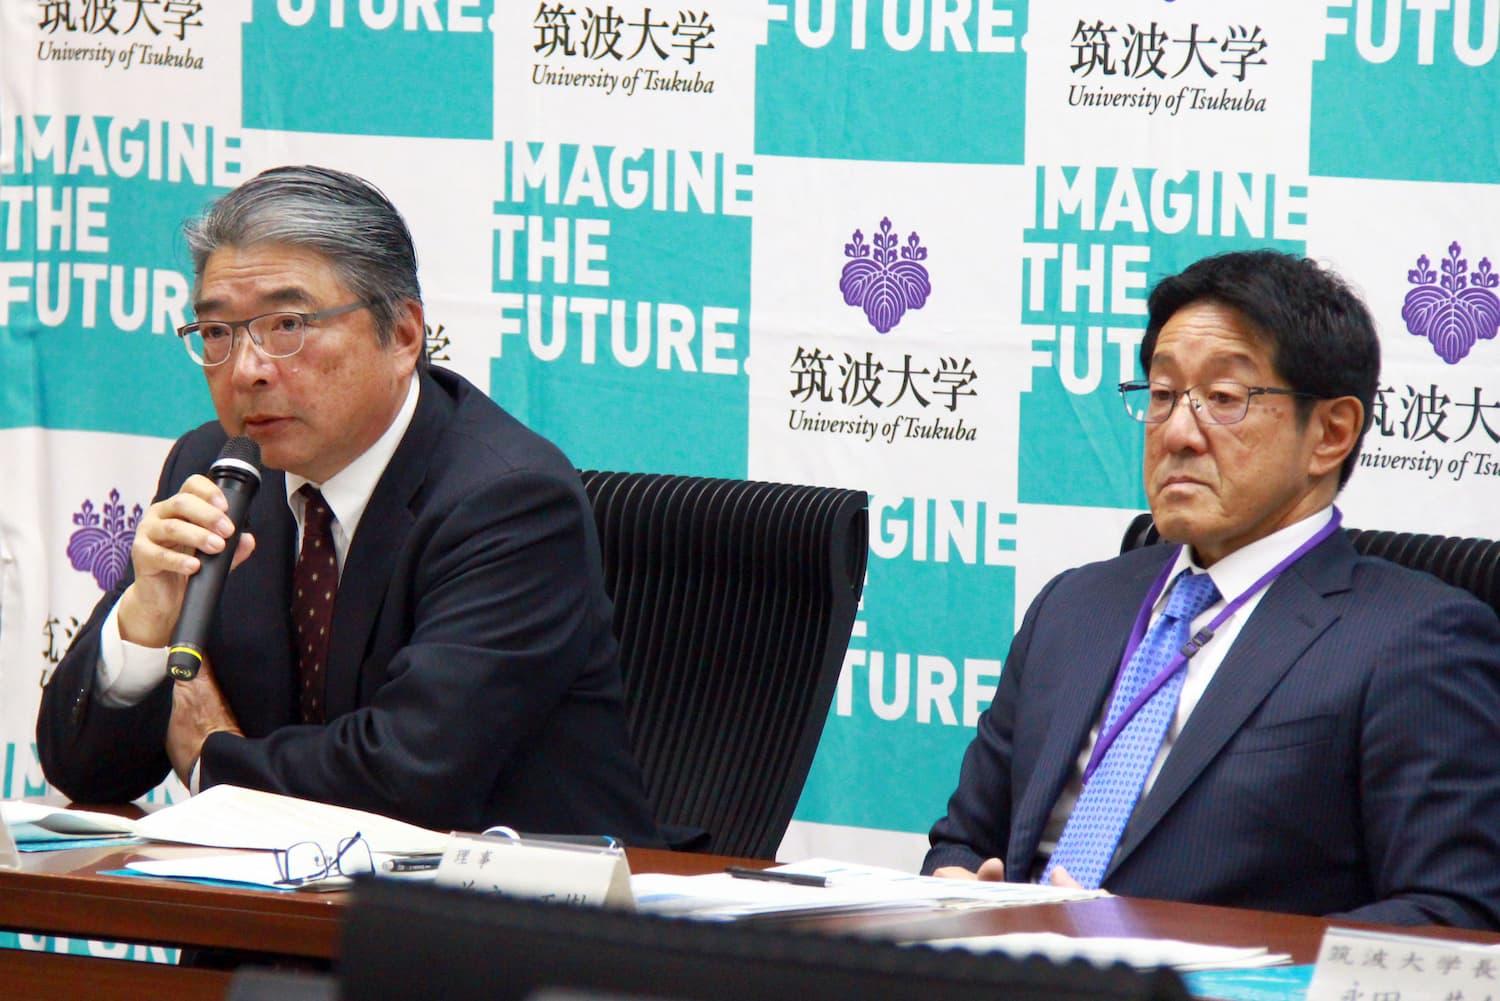 左から、野手 弘一 事業・ファイナンス局長、CFO（予定）、益戸 正樹 理事（事業・ファイナンス担当）、永田 恭介 学長